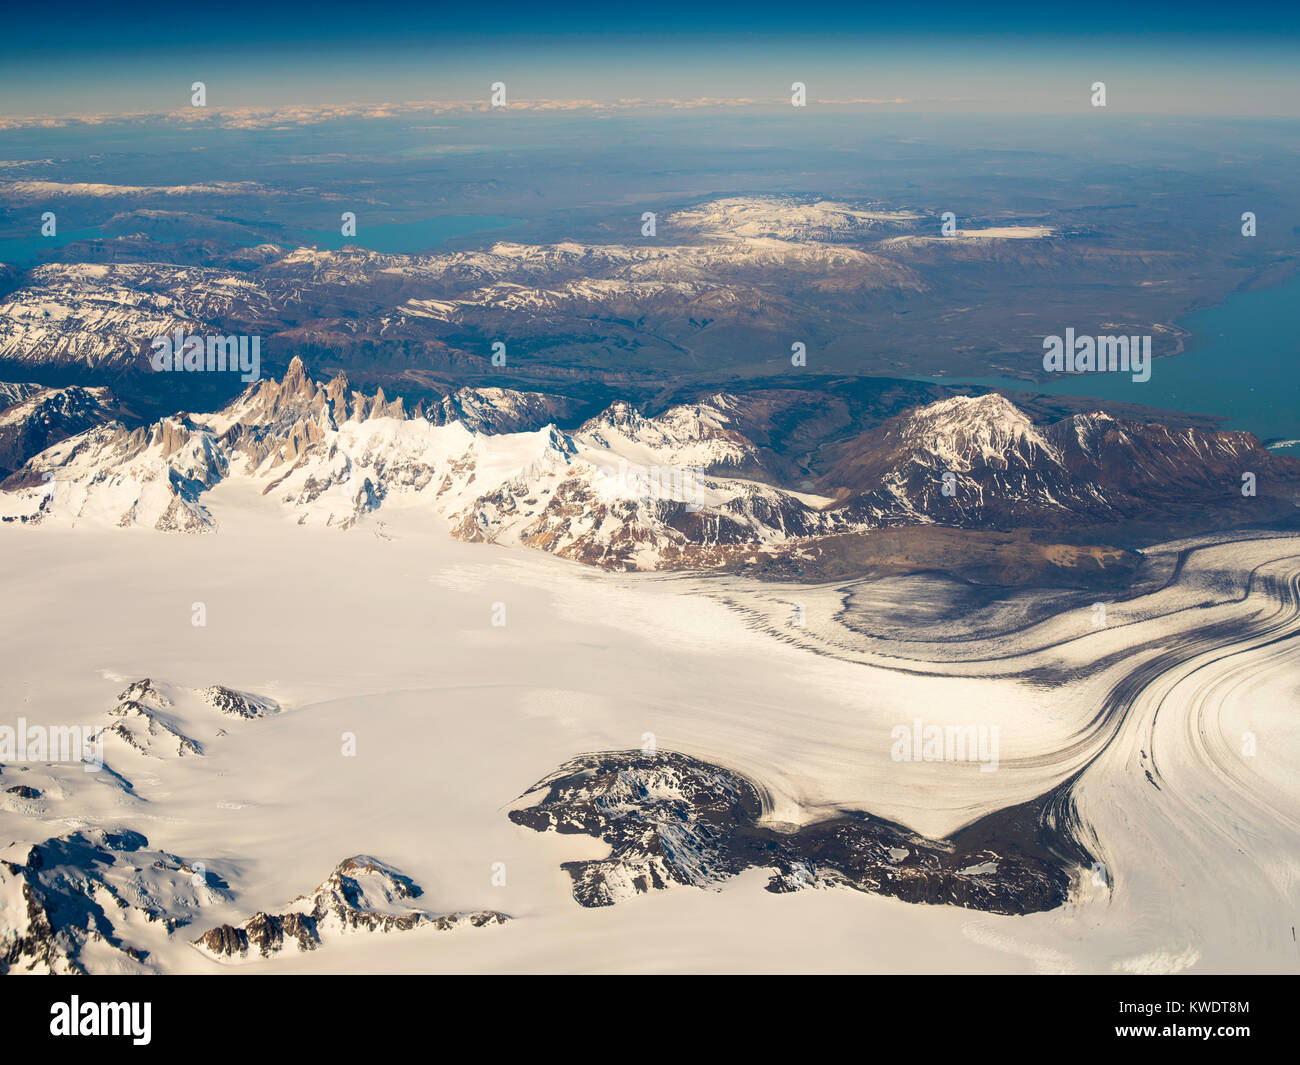 Vista Aerea del Mt. FitzRoy (El Chalten) e il nasello di Patagonia  Icefield, presi da un aereo commerciale oltre le Ande argentine Foto stock  - Alamy